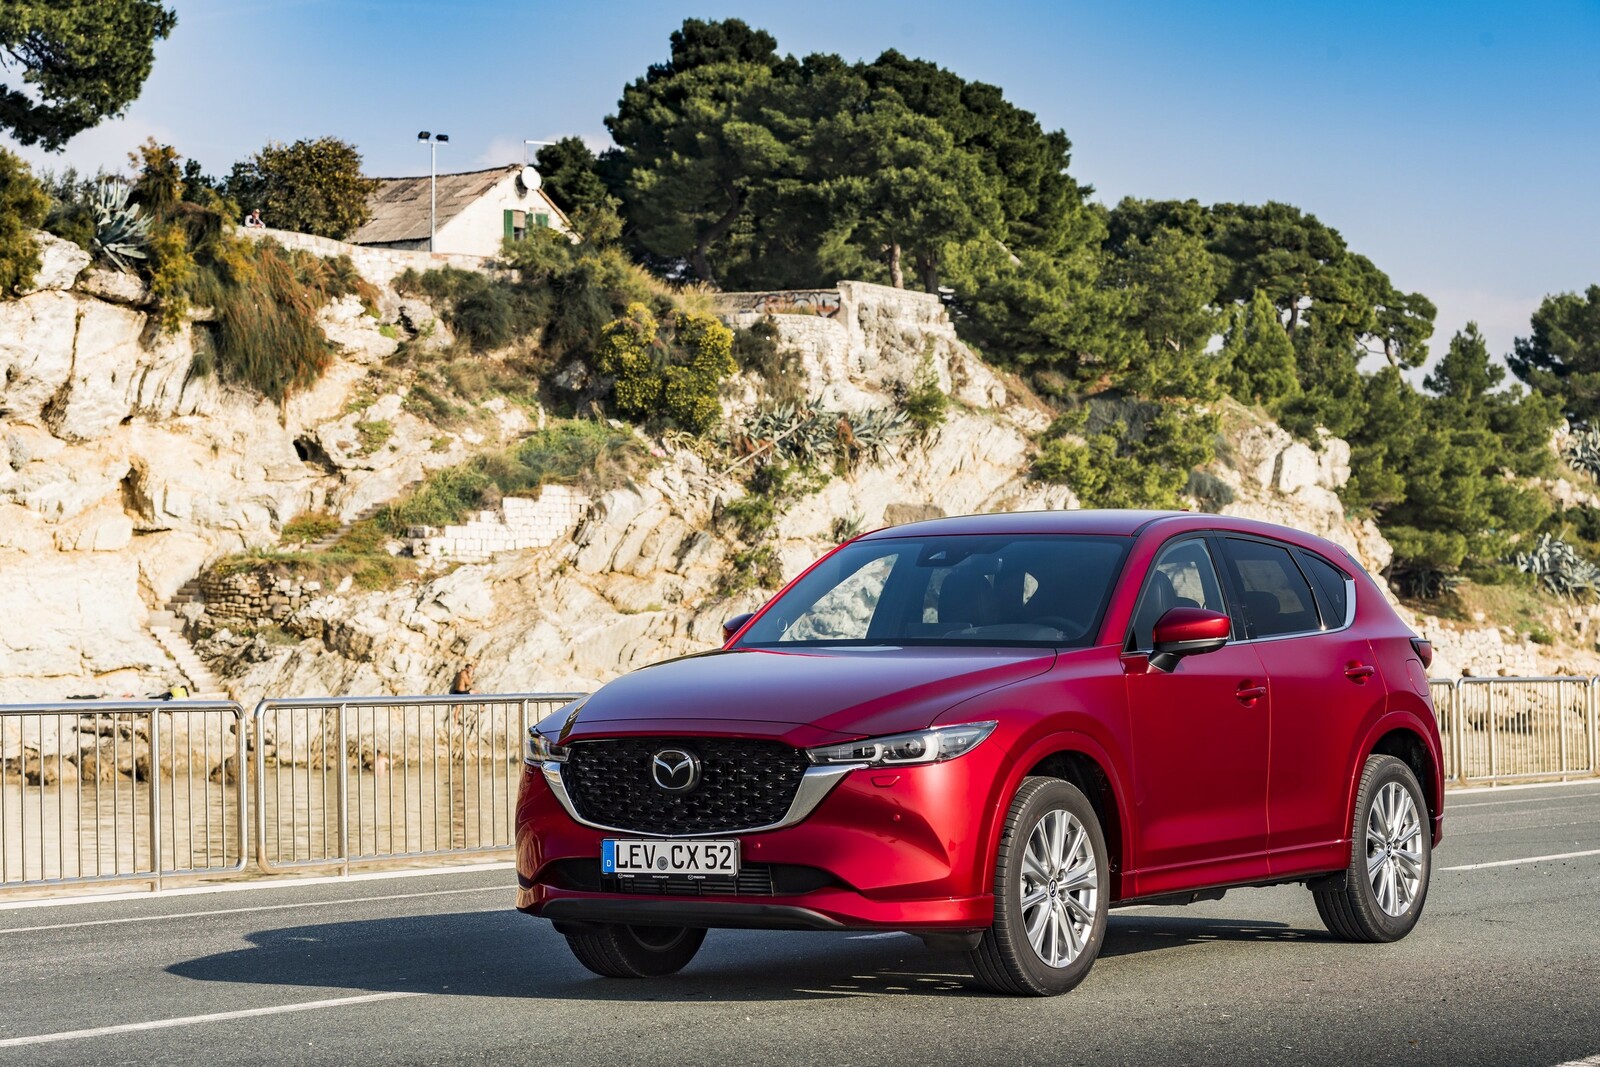 Käufer eines neuen Mazda sind durch die Garantie nun bis zu sechs Jahre und 150.000 Kilometer abgesichert.